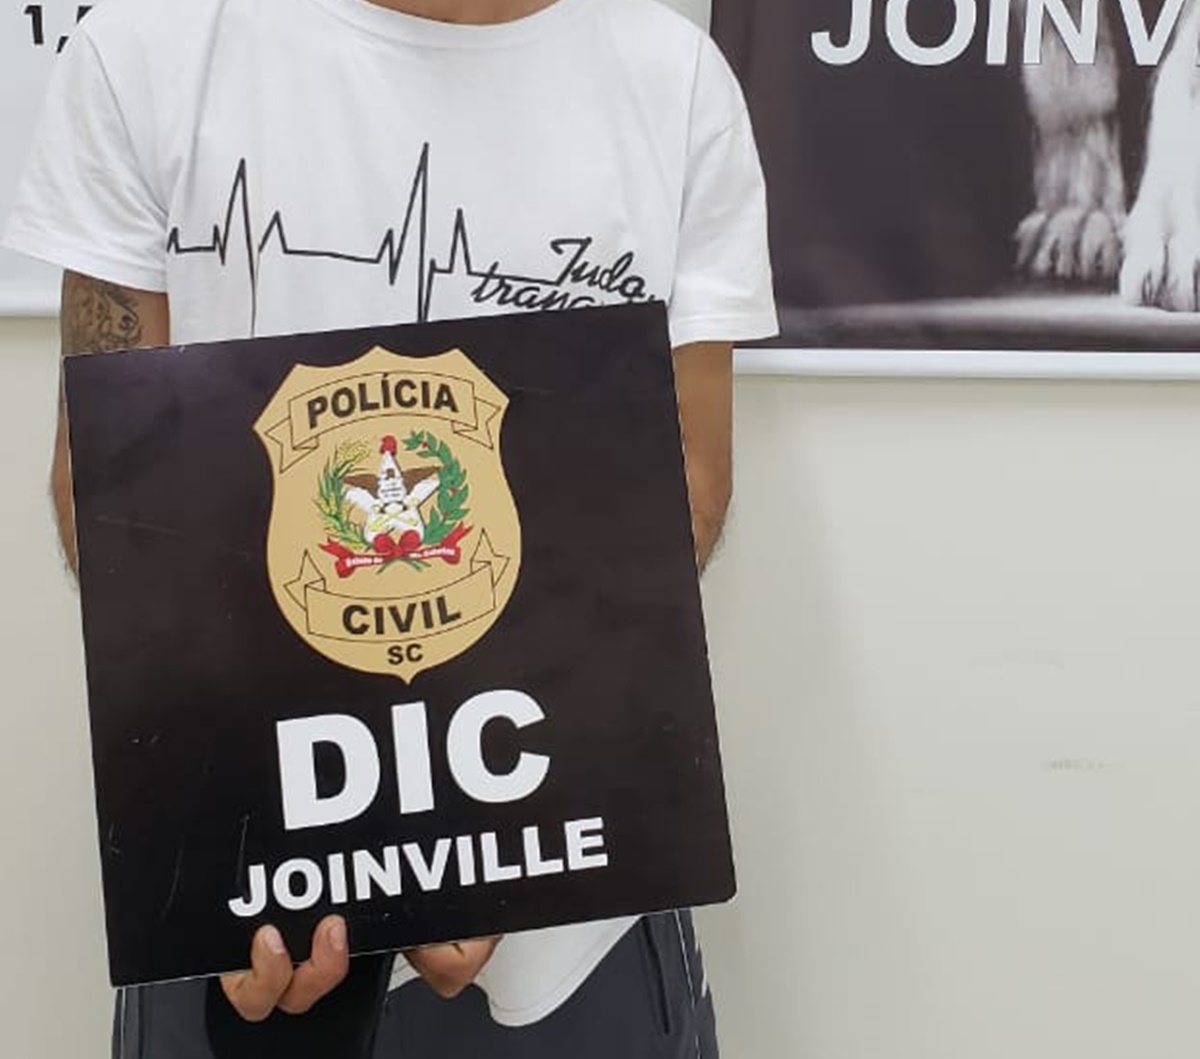 Foto: Divulgação/Polícia Civil de Joinville